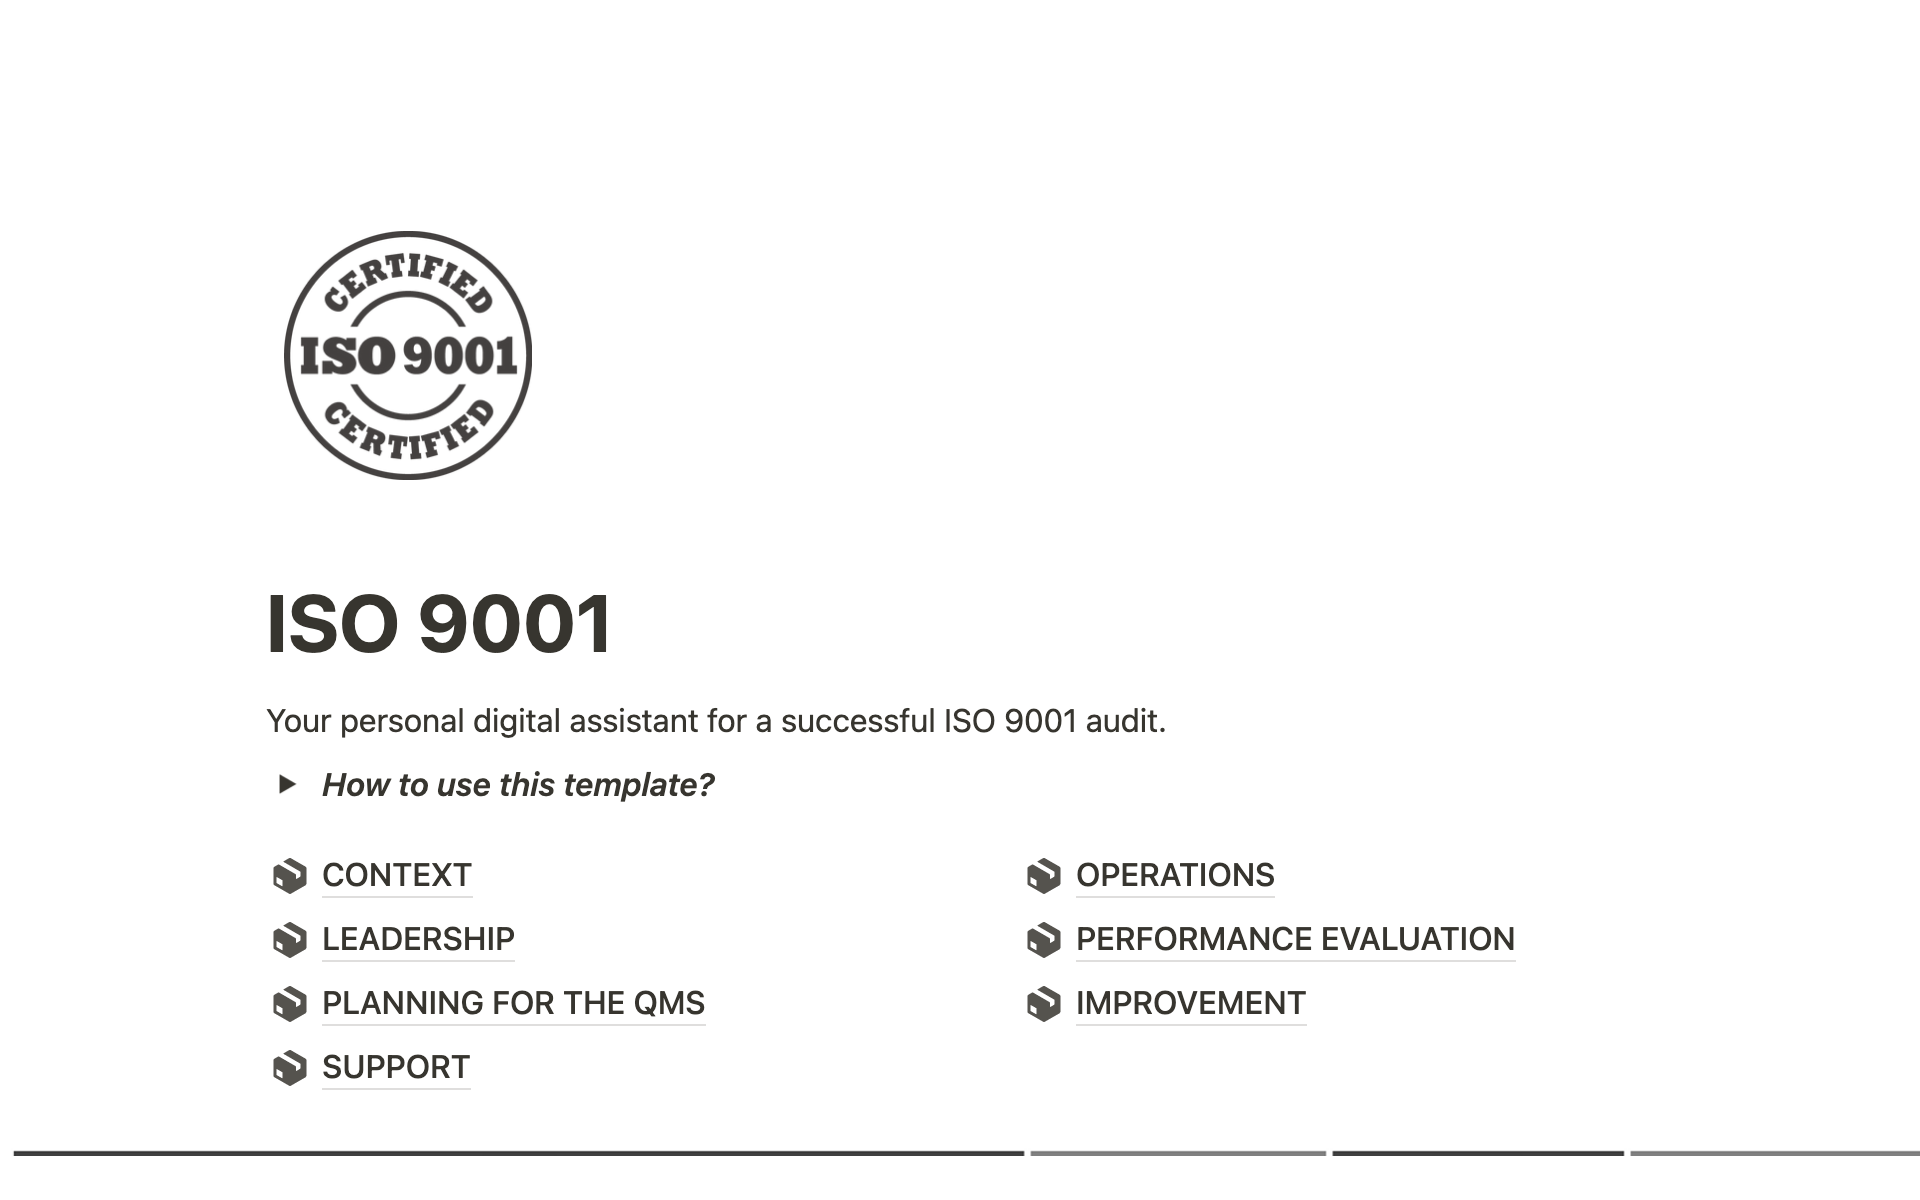 Vista previa de una plantilla para ISO 9001 - audit assistant